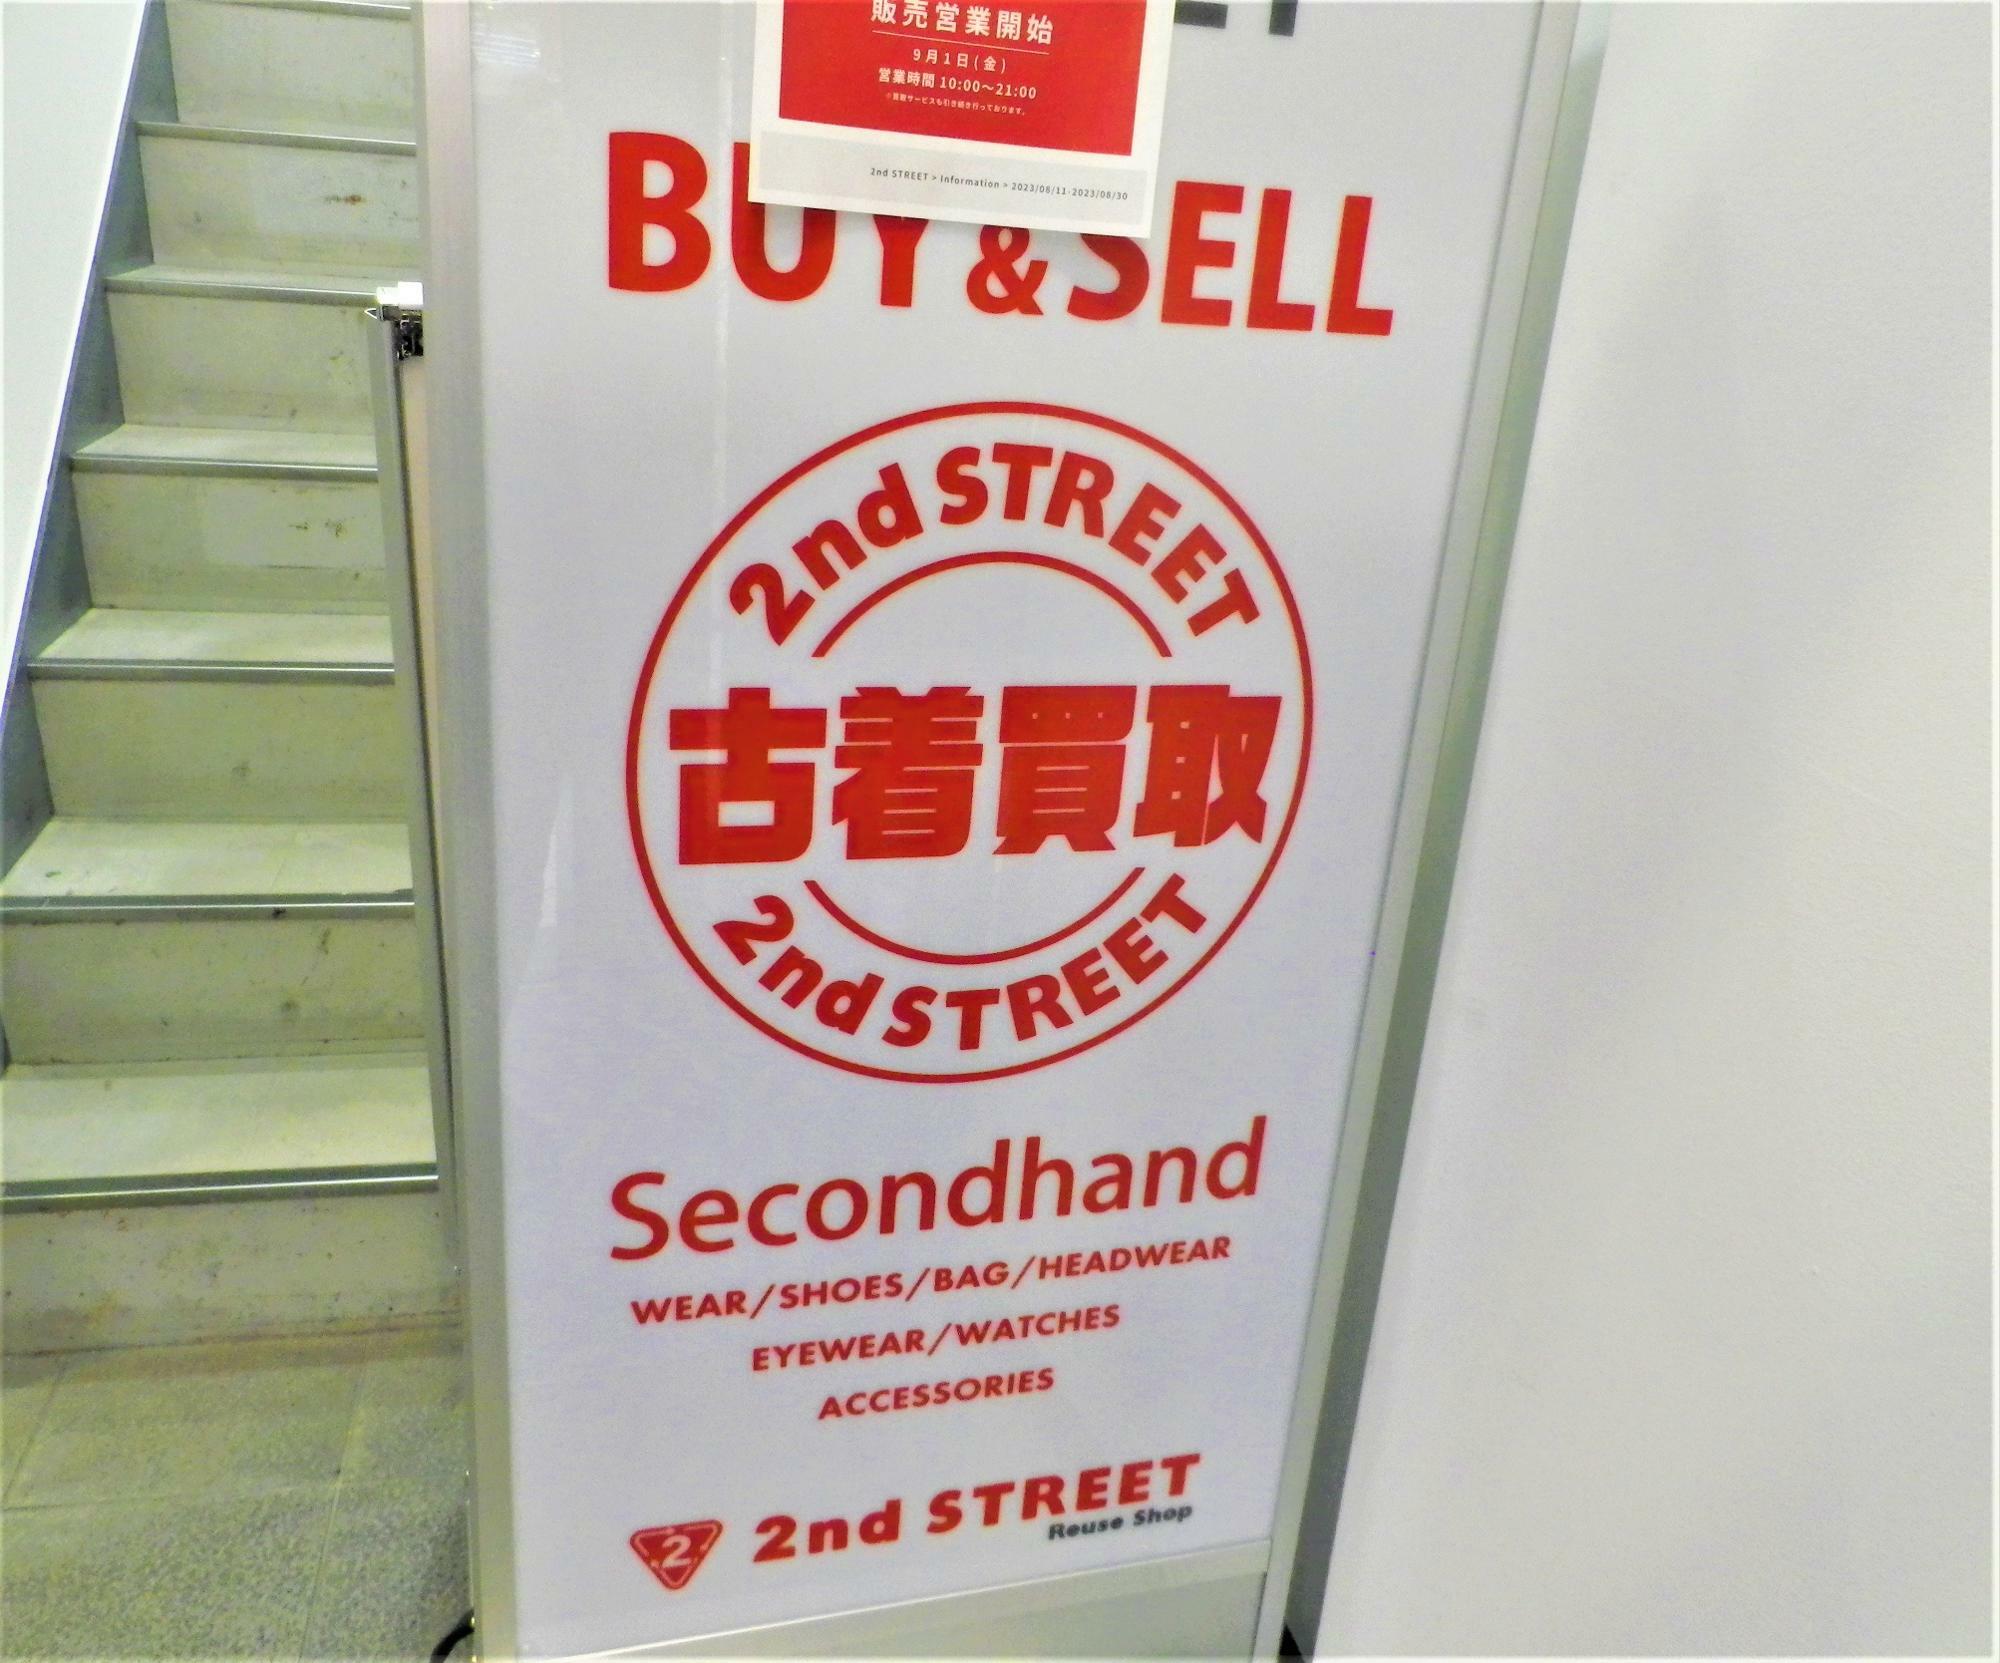 わかりやすいマークが目立つ「セカンドストリート十三店」の看板。